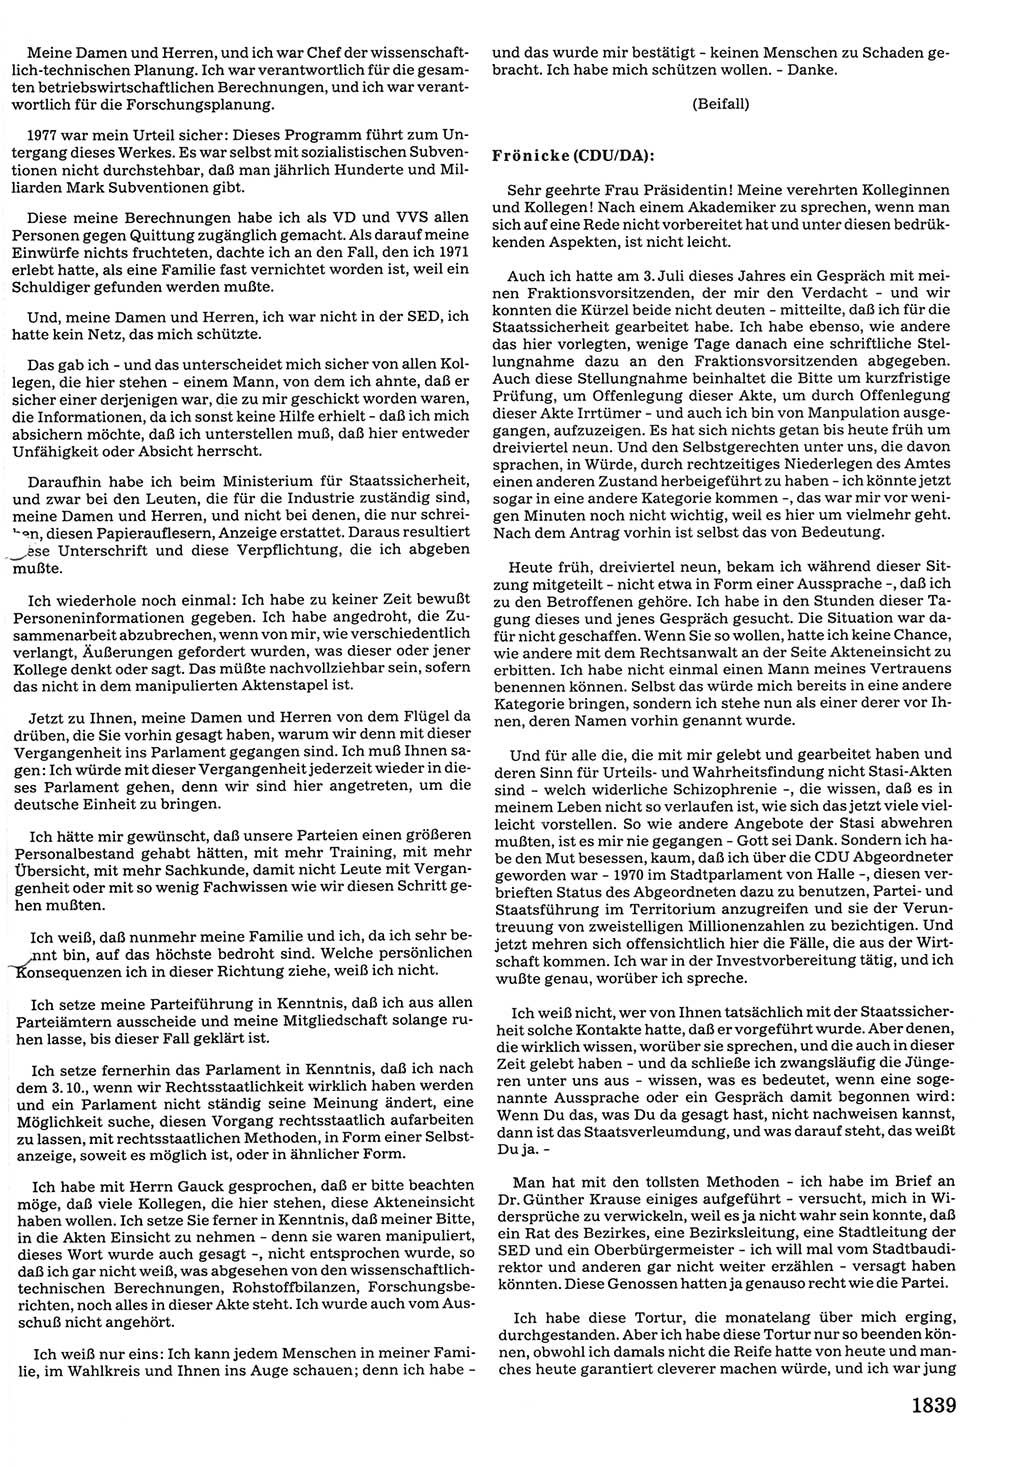 Tagungen der Volkskammer (VK) der Deutschen Demokratischen Republik (DDR), 10. Wahlperiode 1990, Seite 1839 (VK. DDR 10. WP. 1990, Prot. Tg. 1-38, 5.4.-2.10.1990, S. 1839)